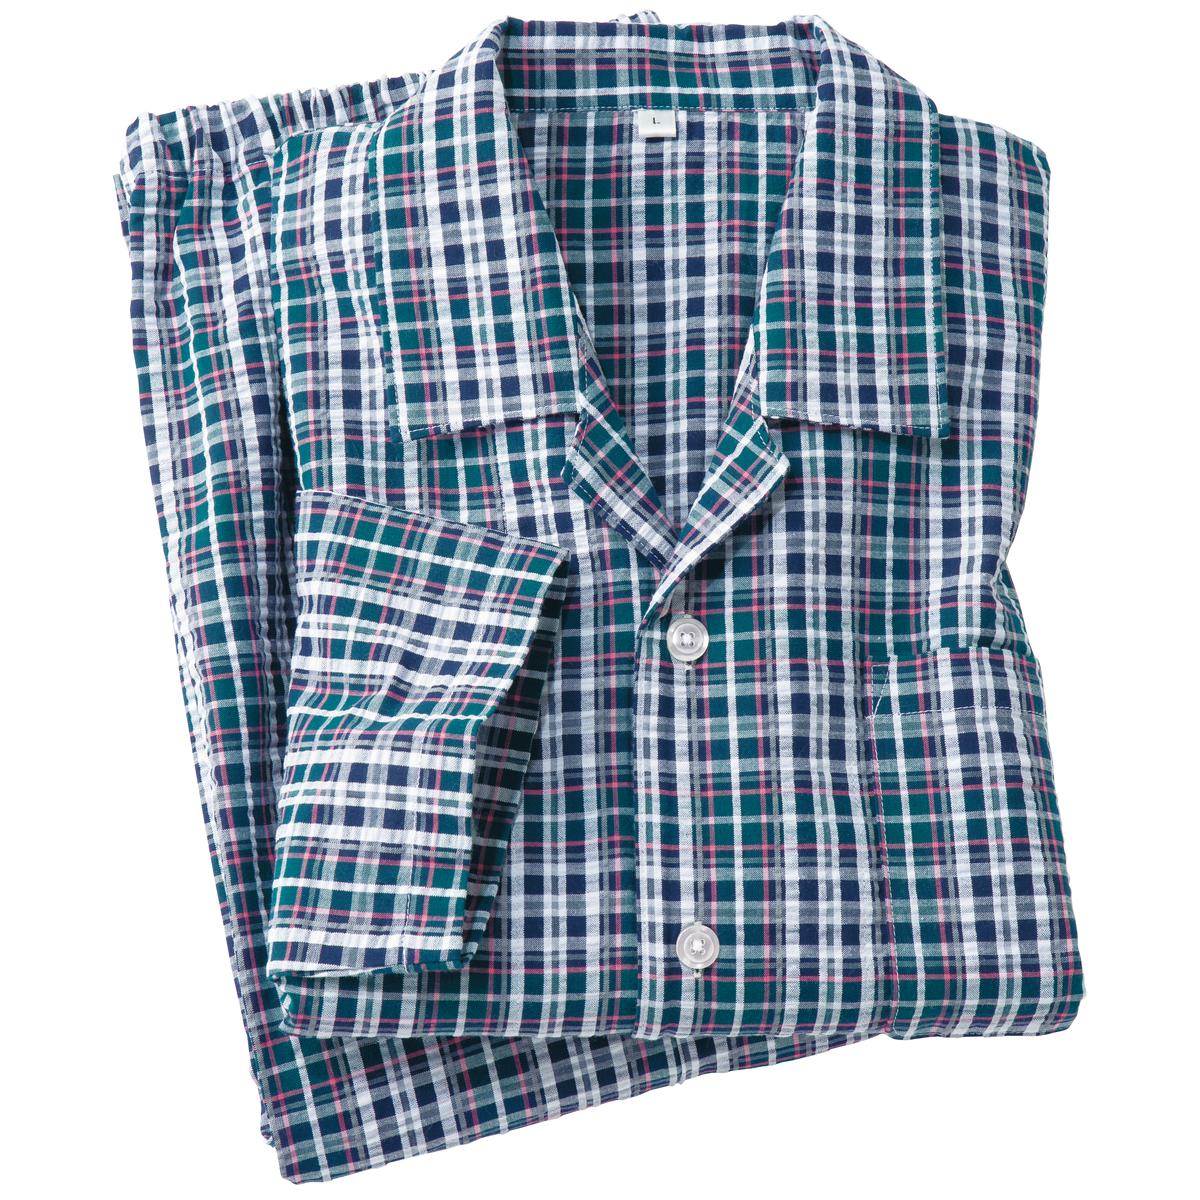 綿100%サッカーシャツパジャマ(男女兼用) - ファッション通販なら